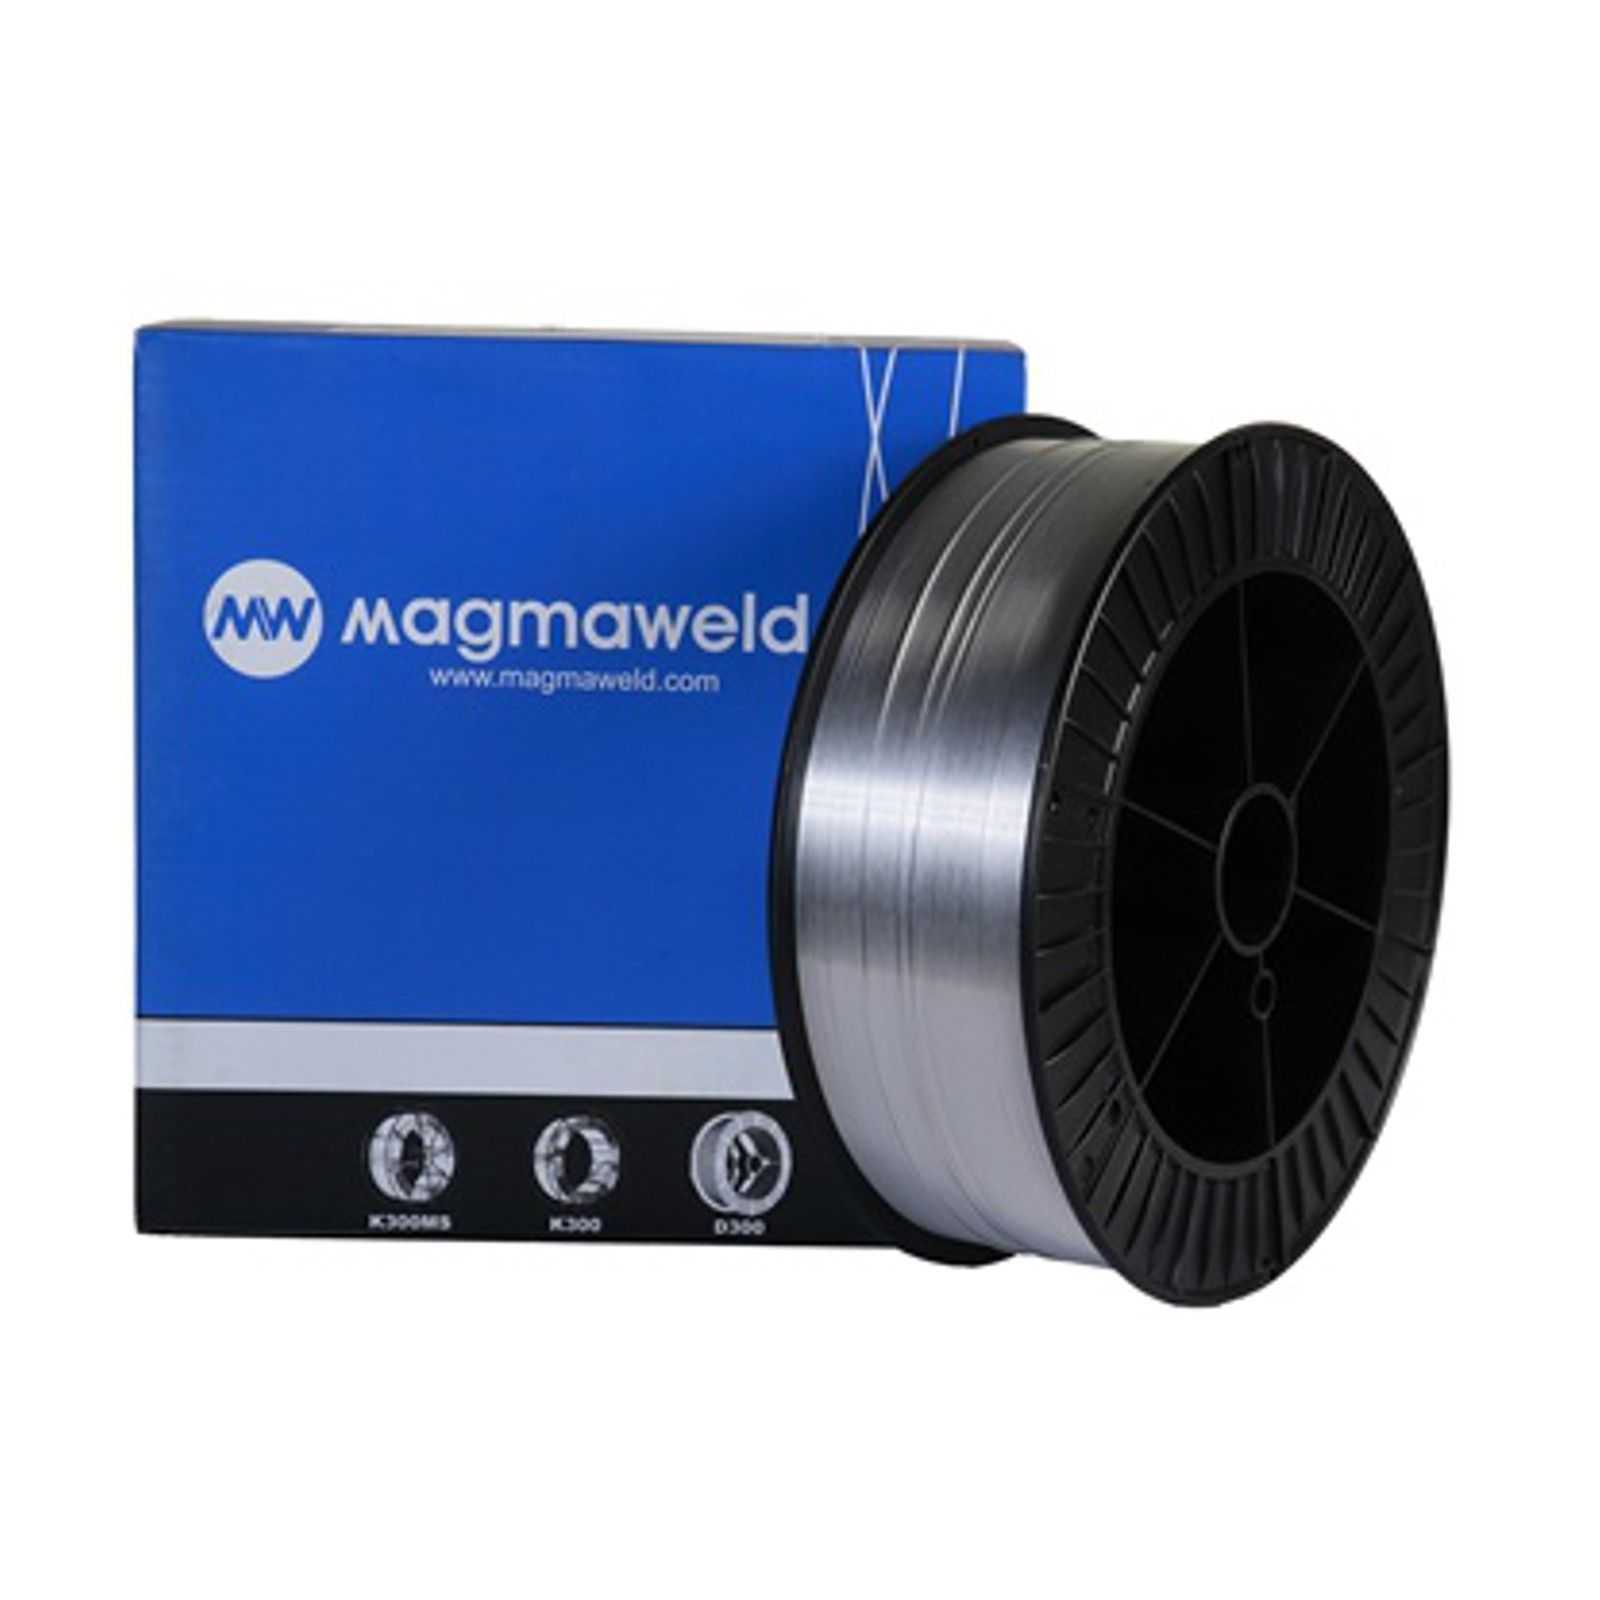 MAGMAWELD AWS 5356 AlMg 5 (3.3556 ) MIG Schweißdraht Aluminium Ø 1,0mm - 2.0 kg (S200 Spule) - M5356.1.0.02 -  - 38,26 € - 